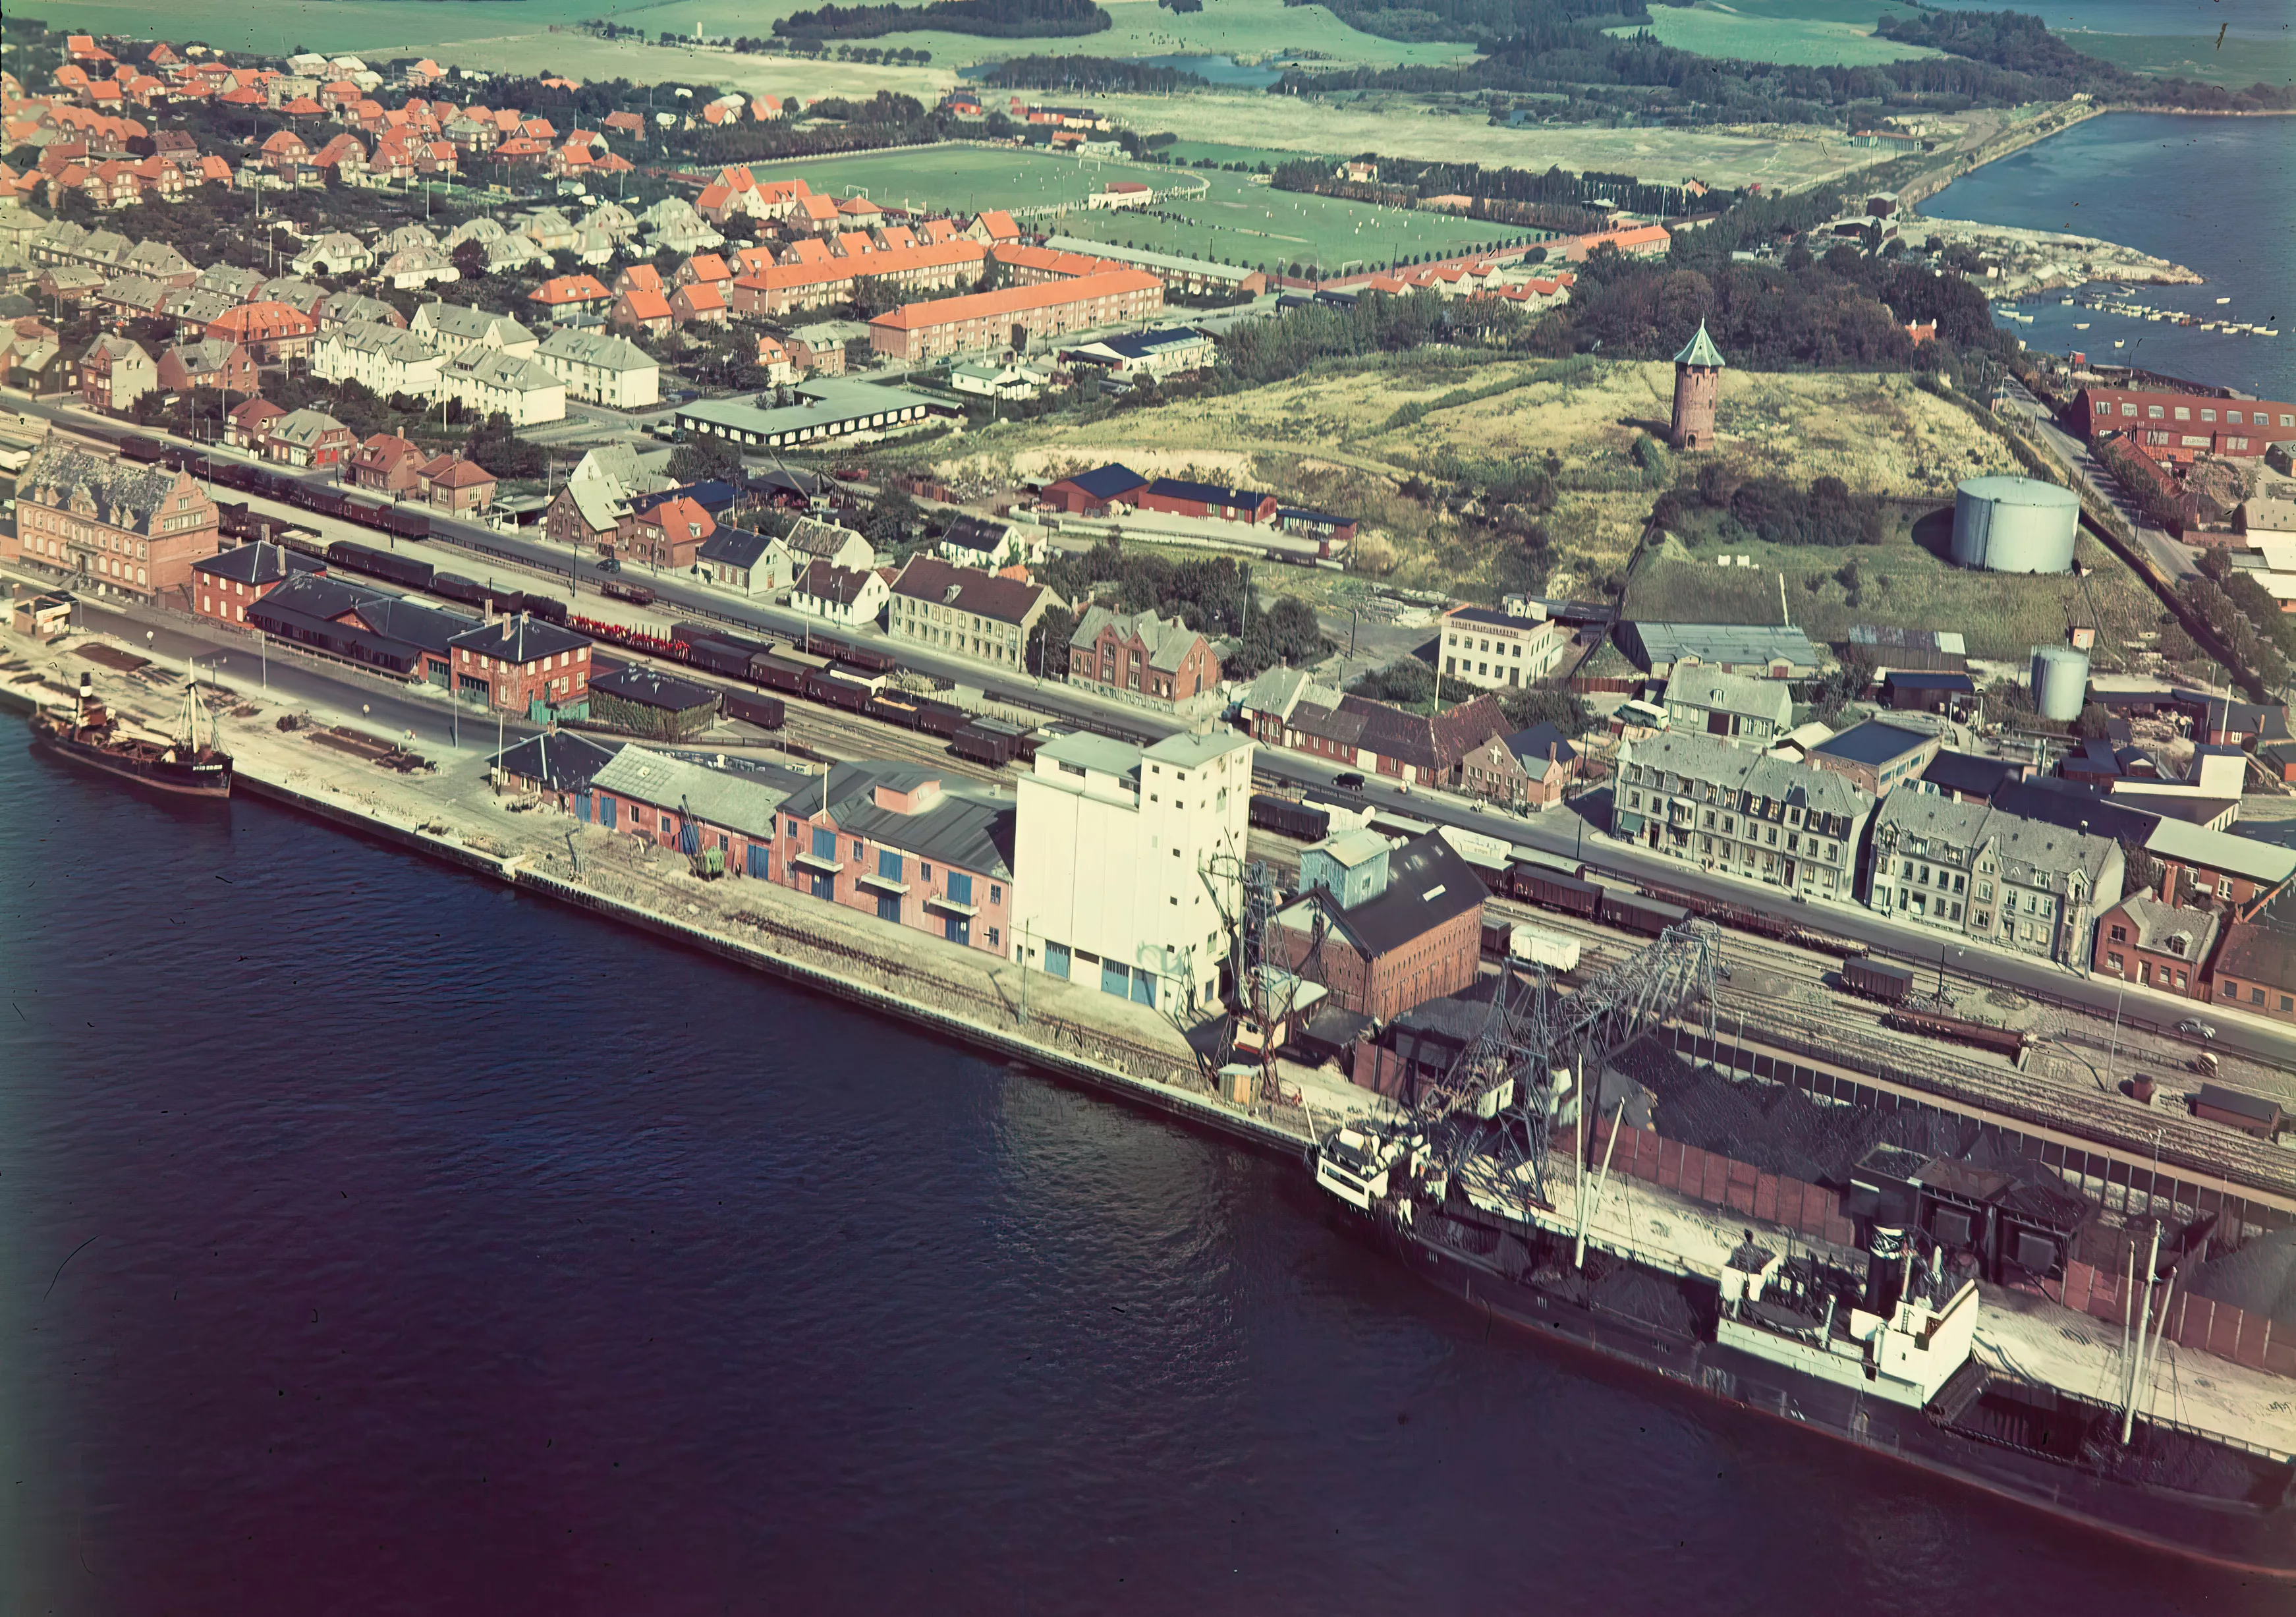 Billede af Korsør Station til venstre i billedet.